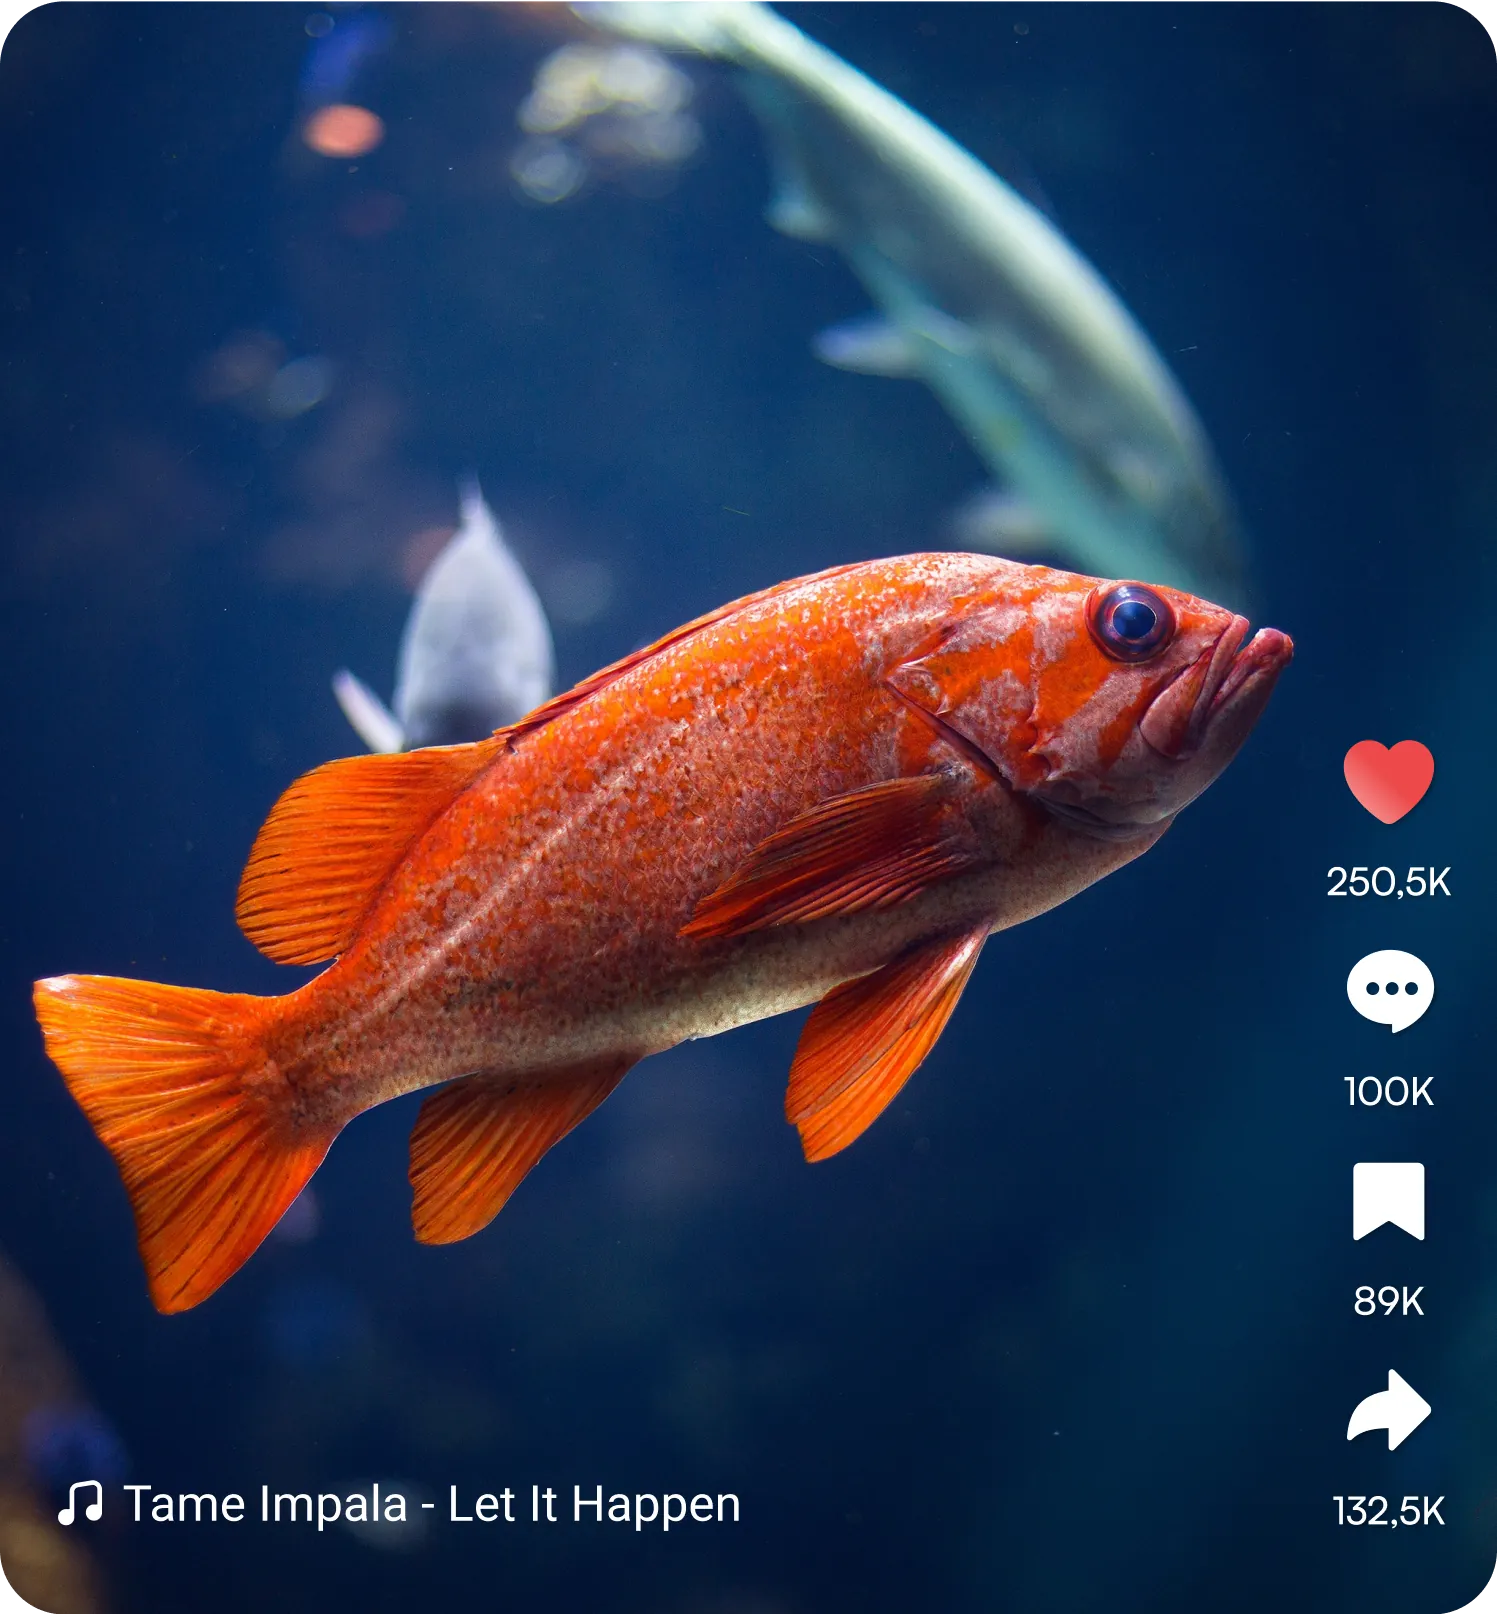 Goldfish Image